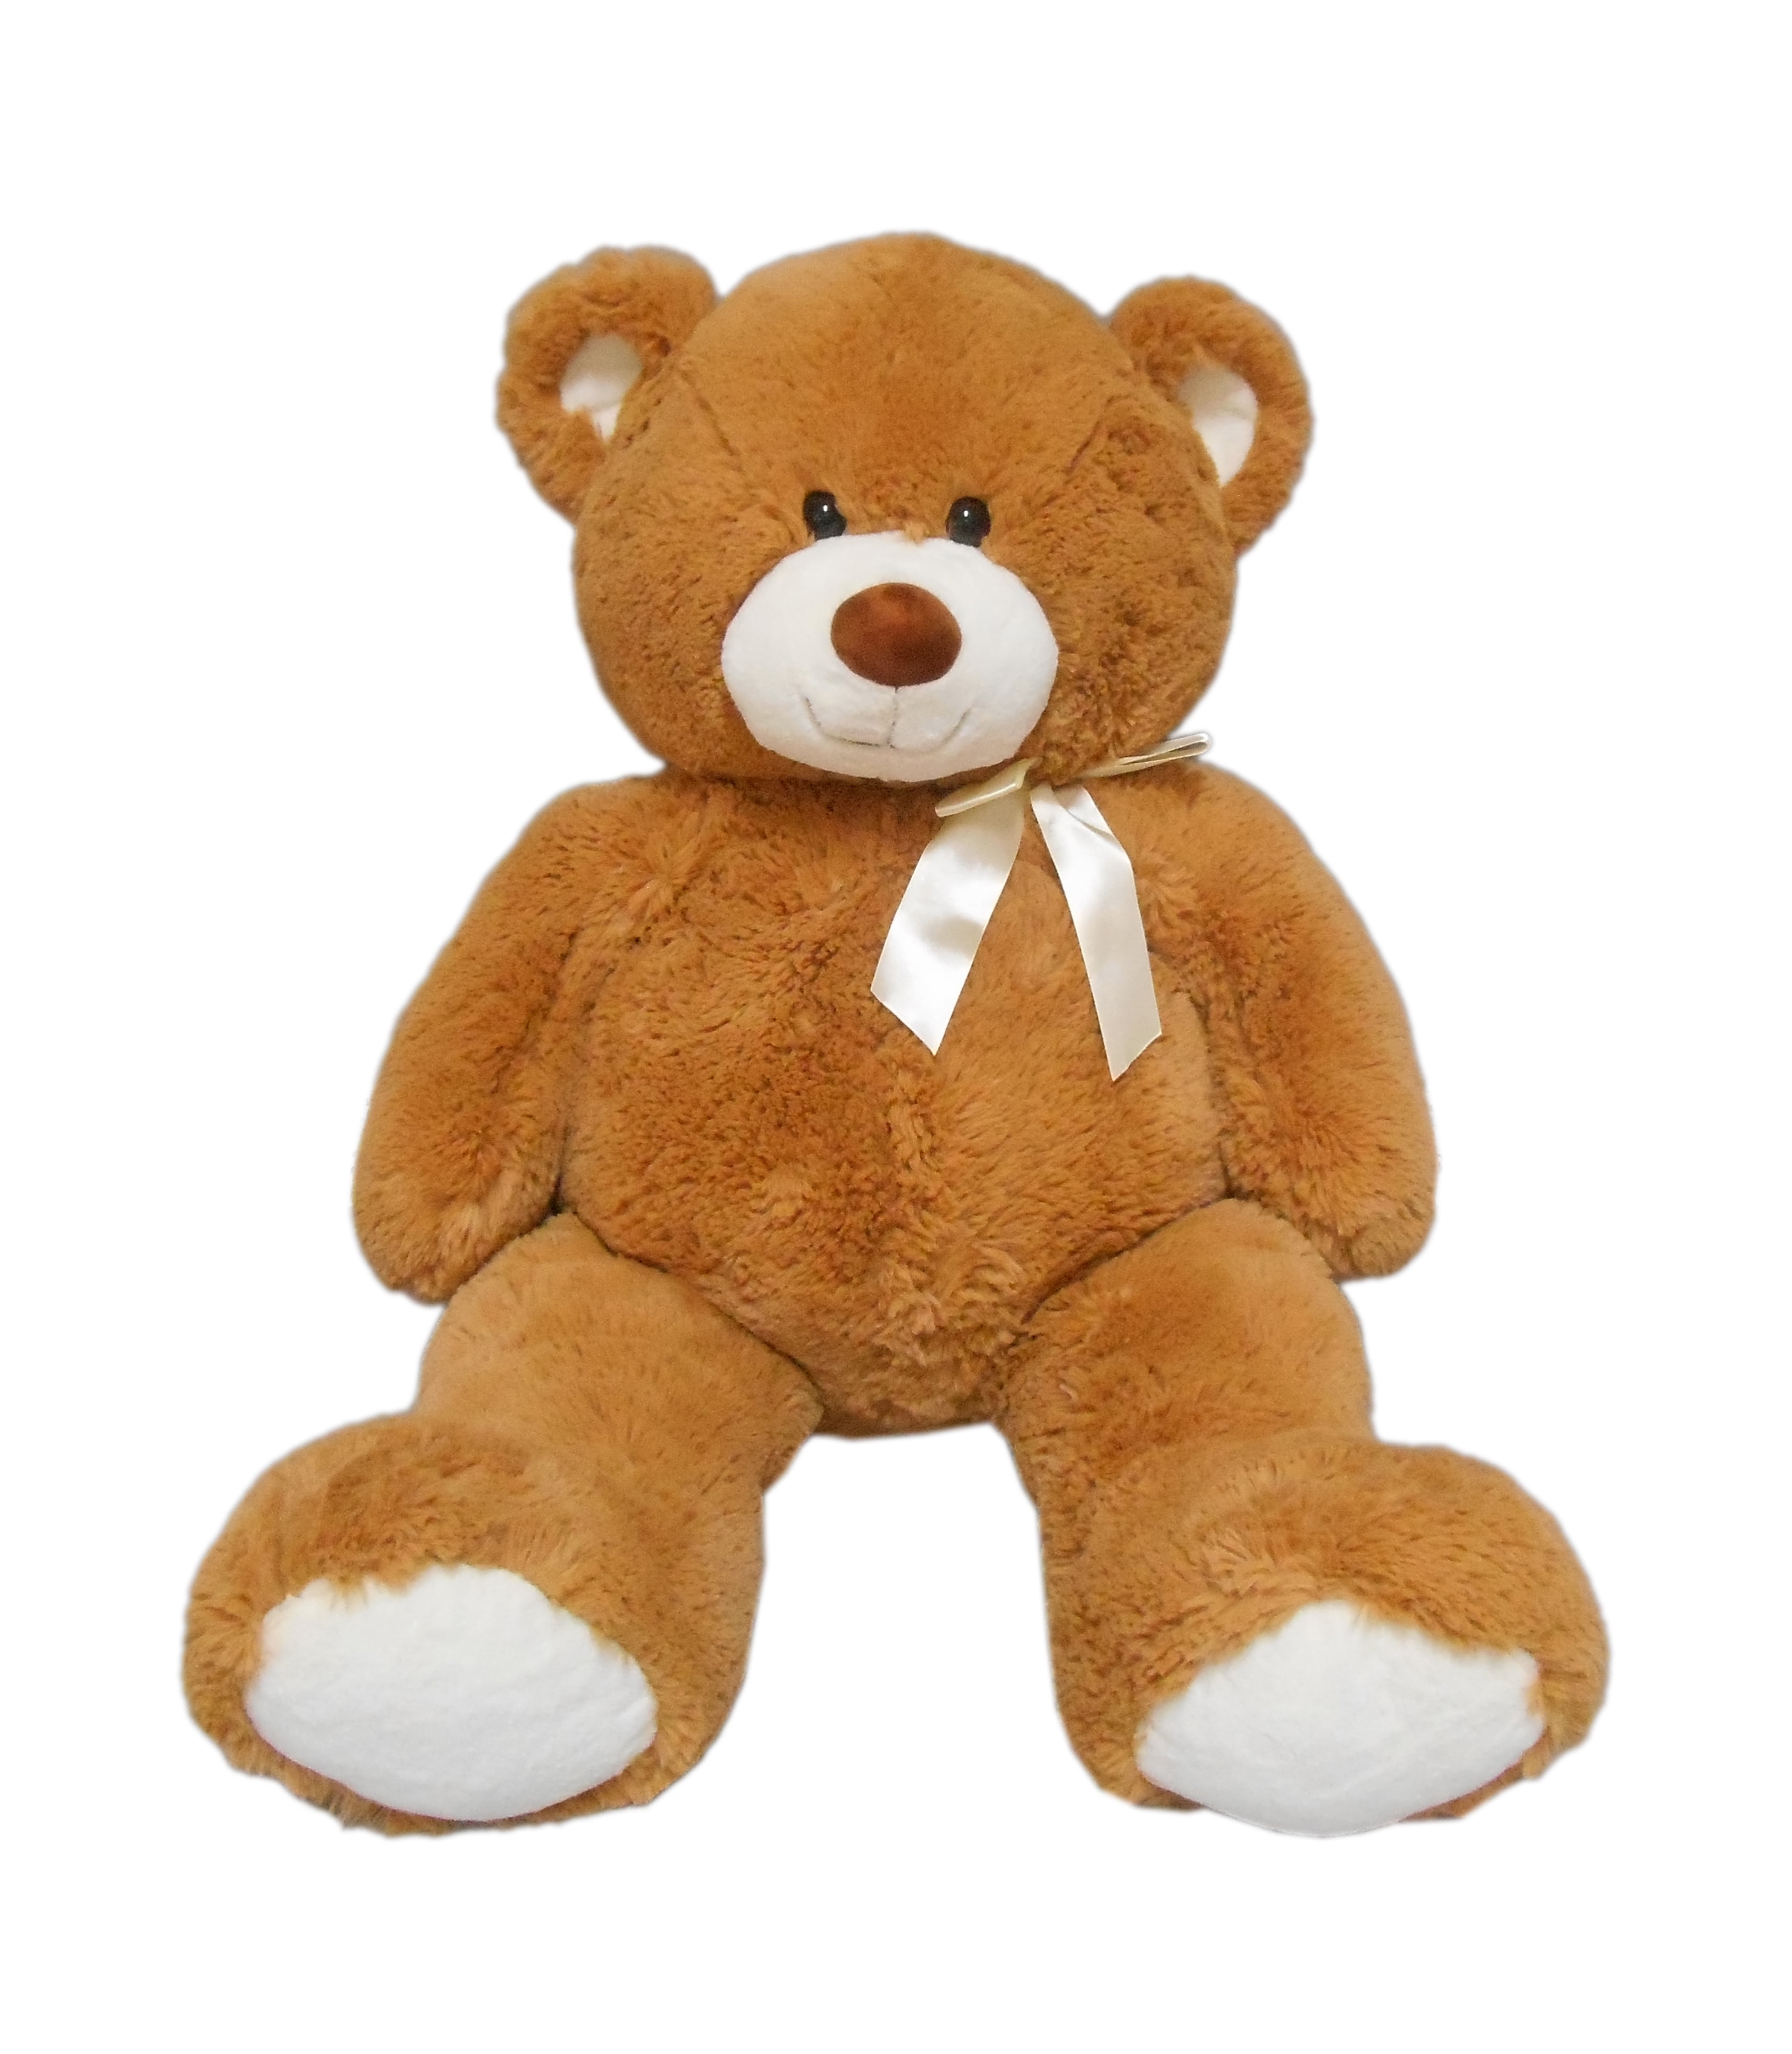 53 inch teddy bear walmart